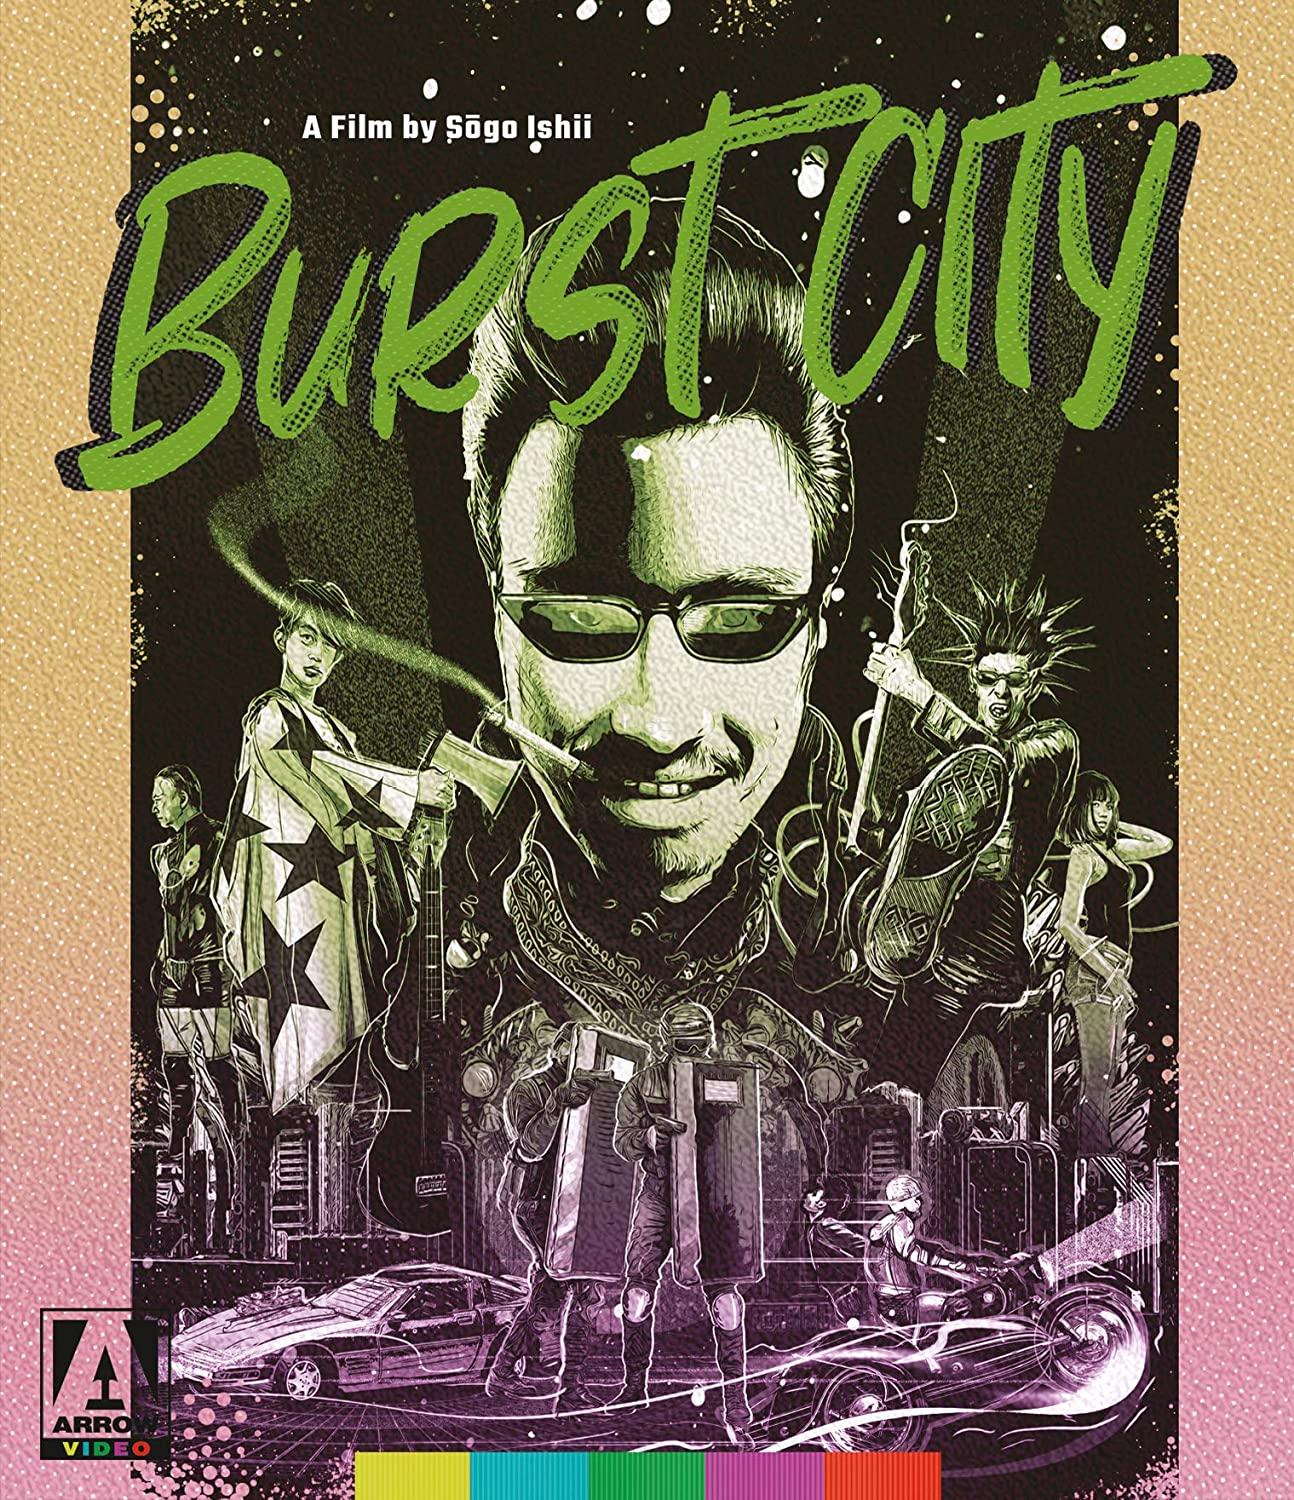 Review: Sogo Ishii’s Cyberpunk Classic Burst City on Arrow Blu-ray - Slant Magazine